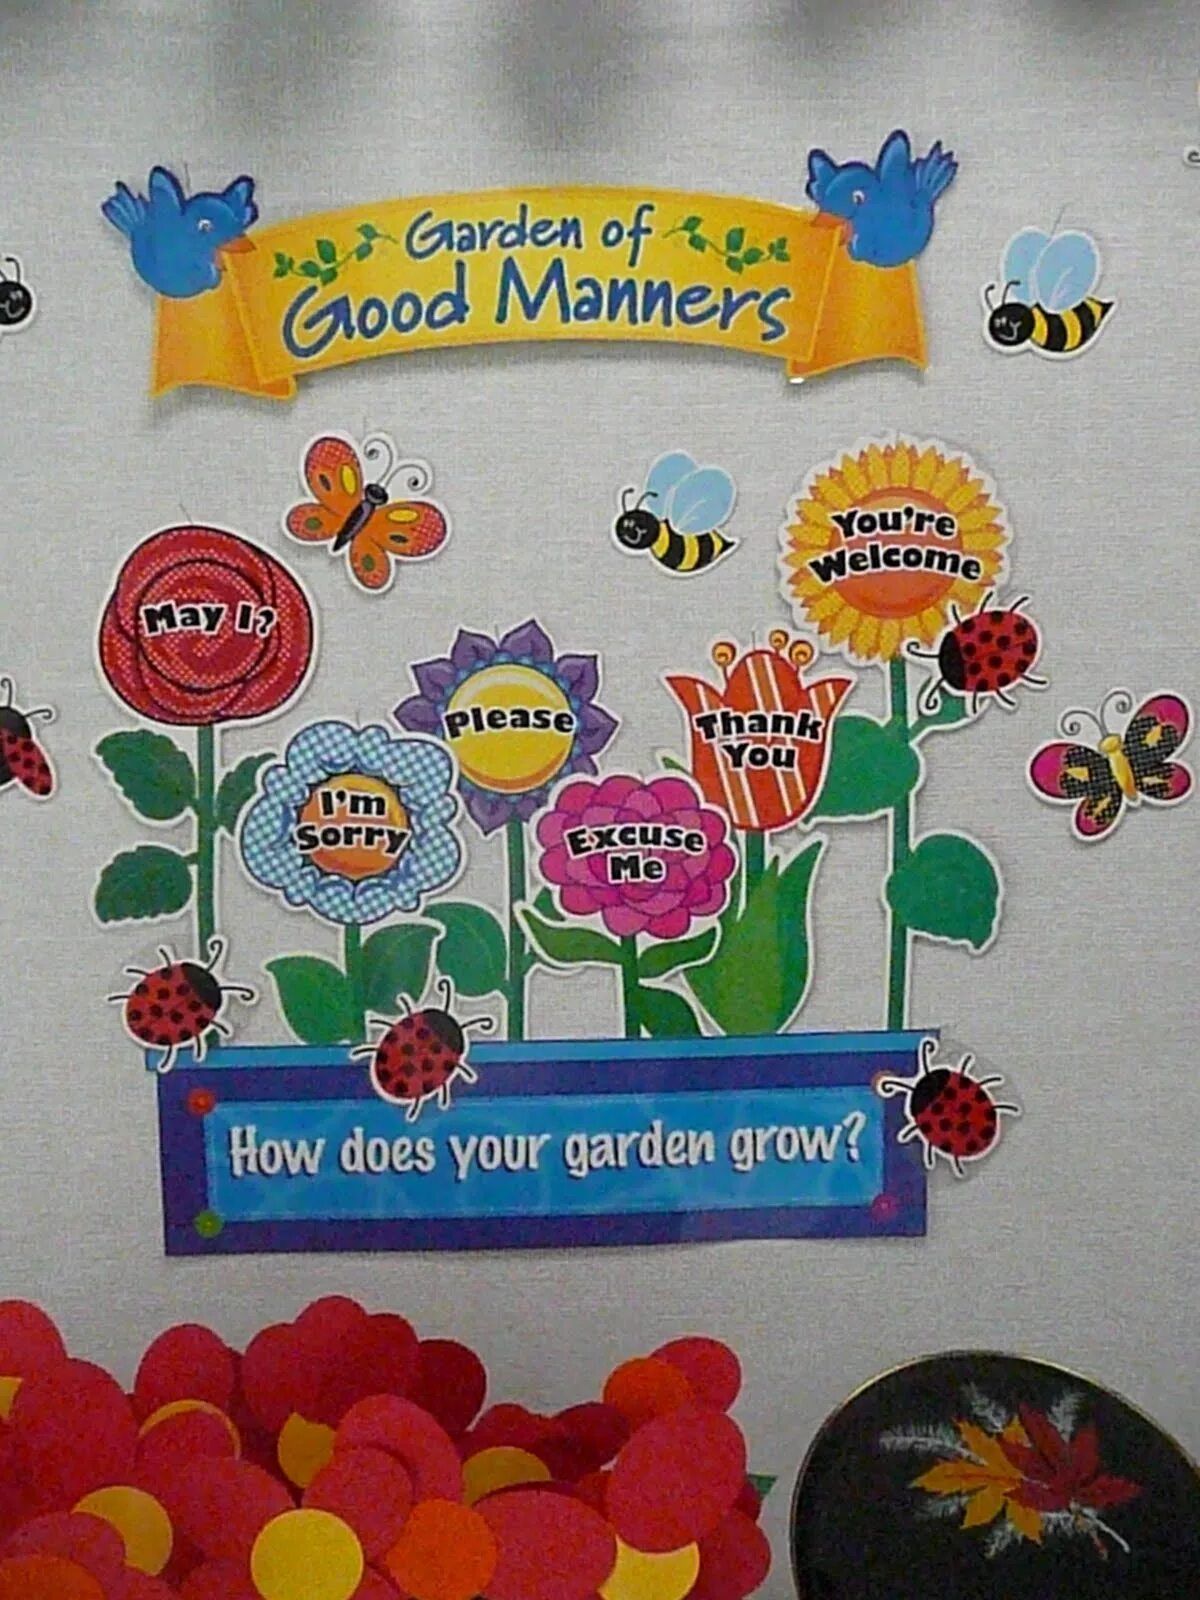 Good manners. Garden of good manners. Garden of good manners check. Parent teacher good manners. This our garden